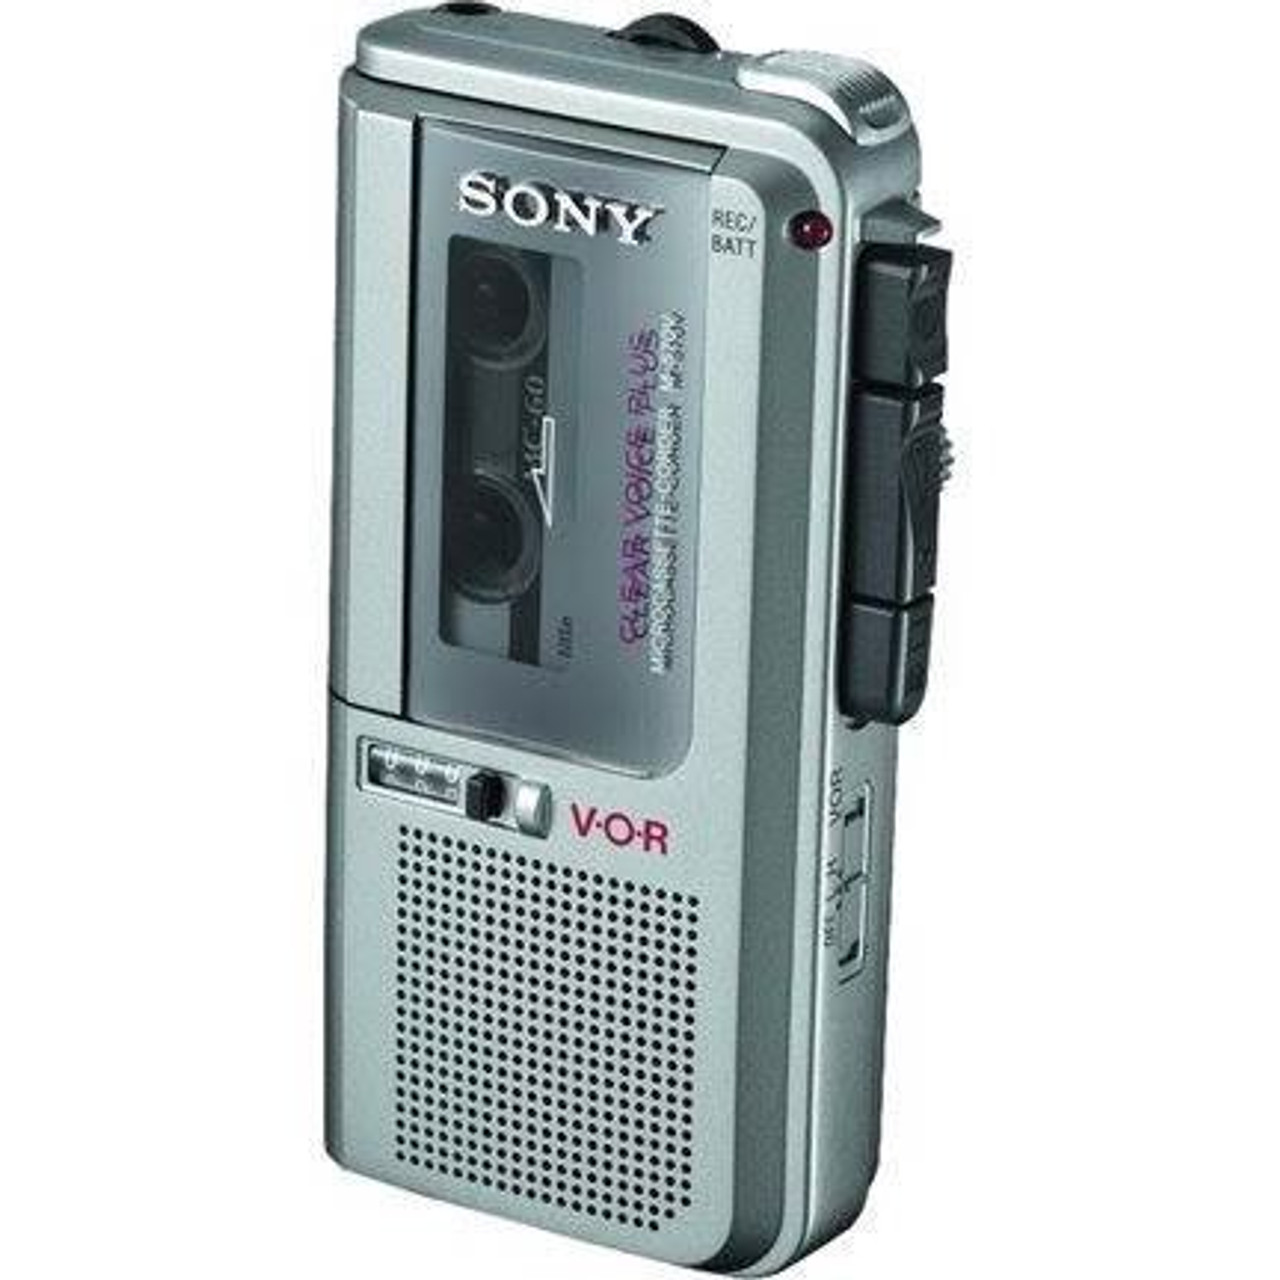 Диктофоны sony купить. Диктофон кассетный Sony m830v. Кассетный диктофон Sony Clear Voice. Диктофон сони 90х кассетный. Диктофон Sony m-629v,.